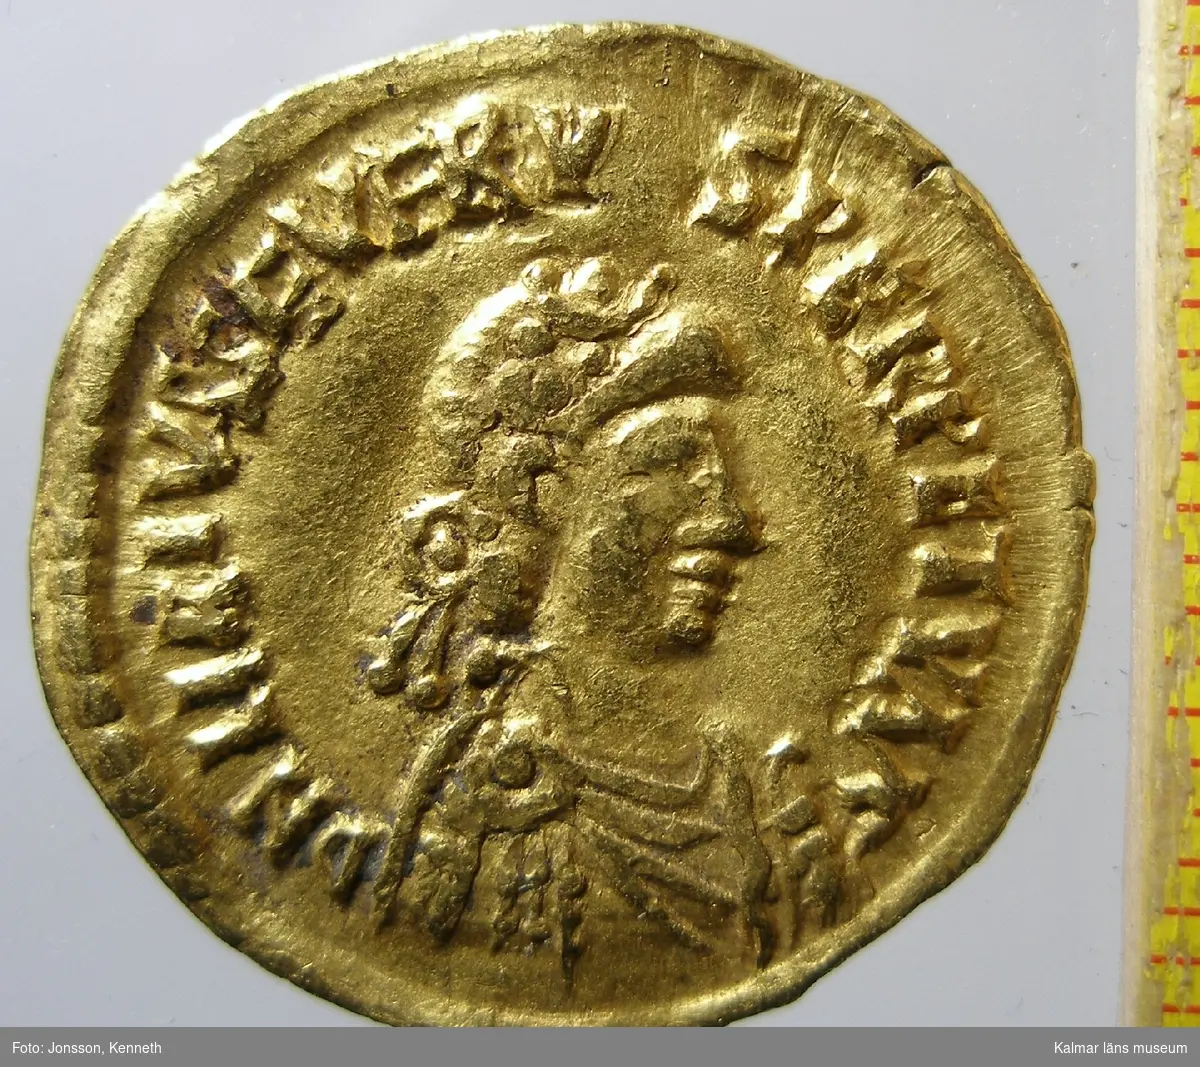 KLM 14347 Mynt, solidus, guld. Präglad för Libius Severus? (461-465). Bestämning: F 120, RICX2723.